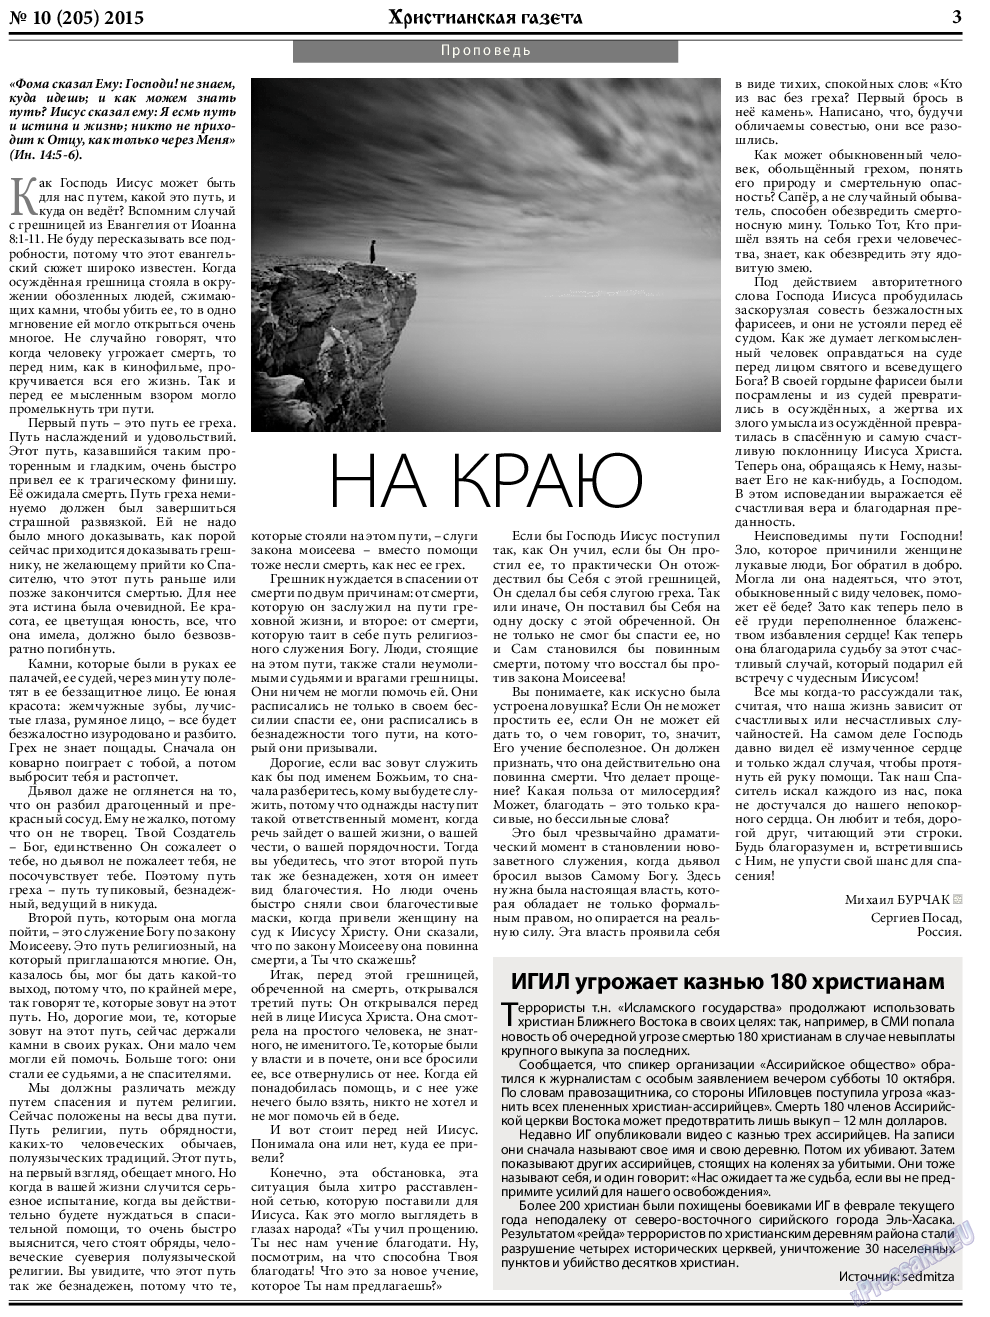 Христианская газета (газета). 2015 год, номер 10, стр. 3